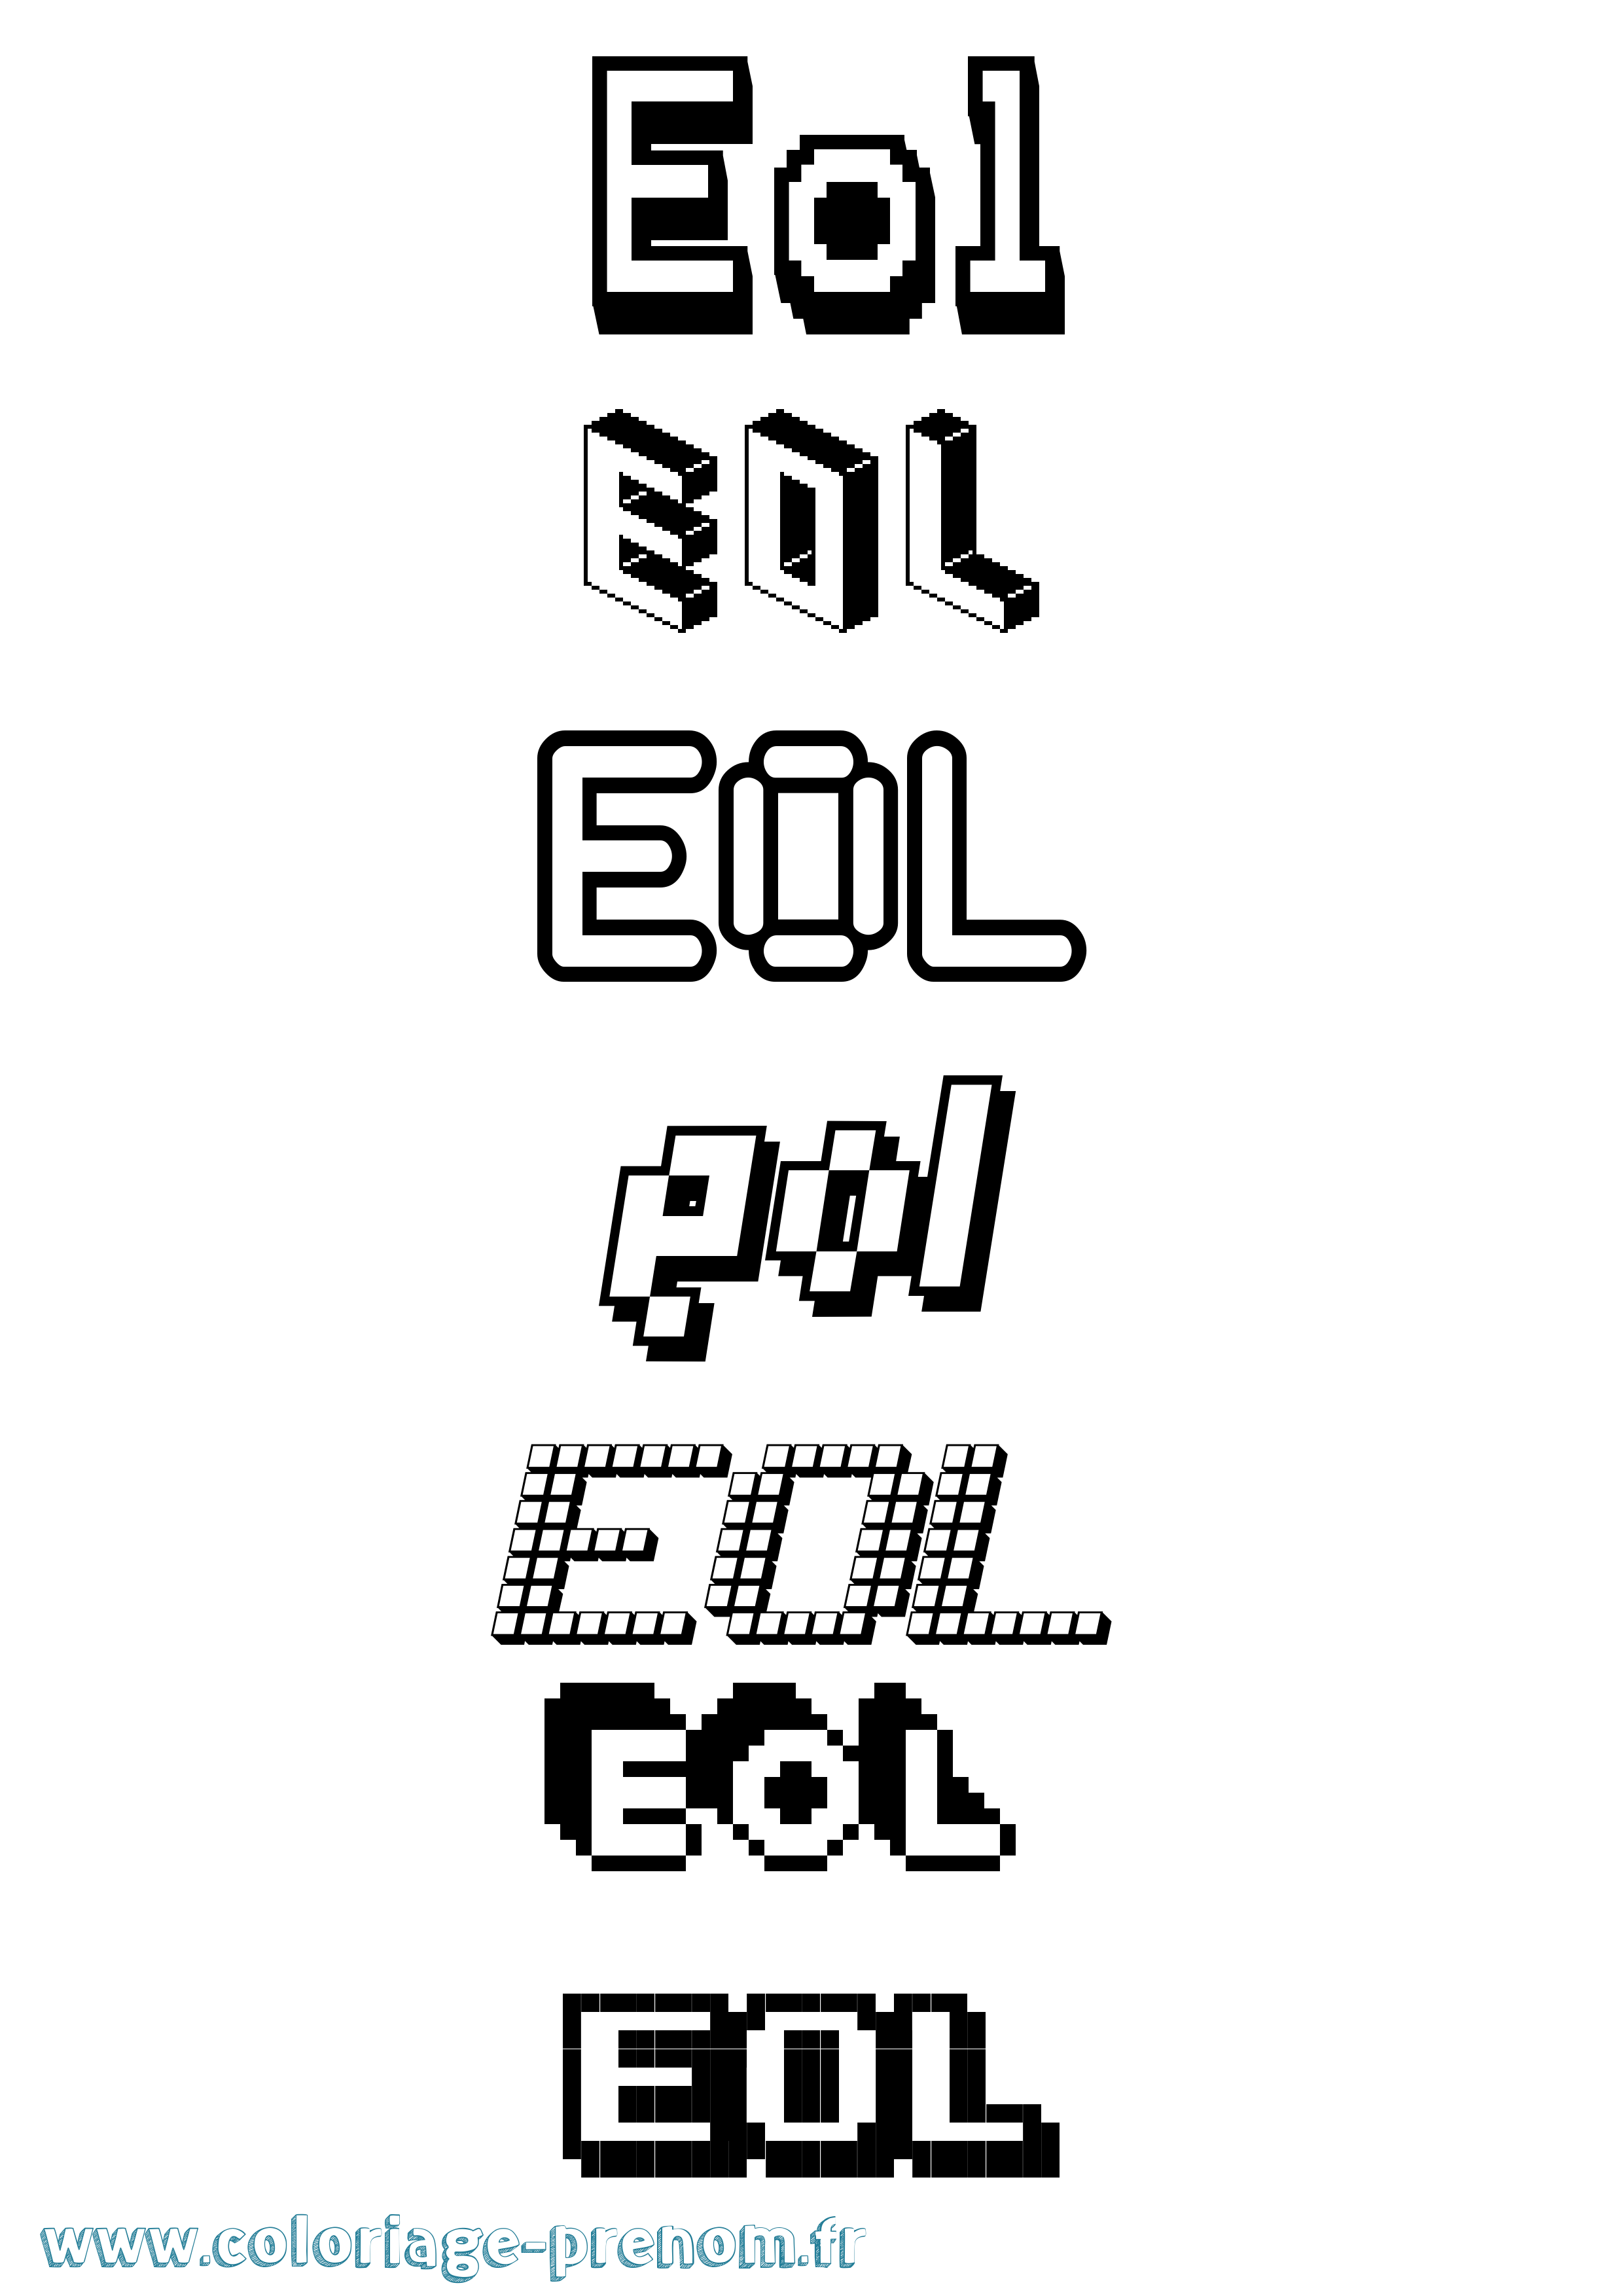 Coloriage prénom Eol Pixel